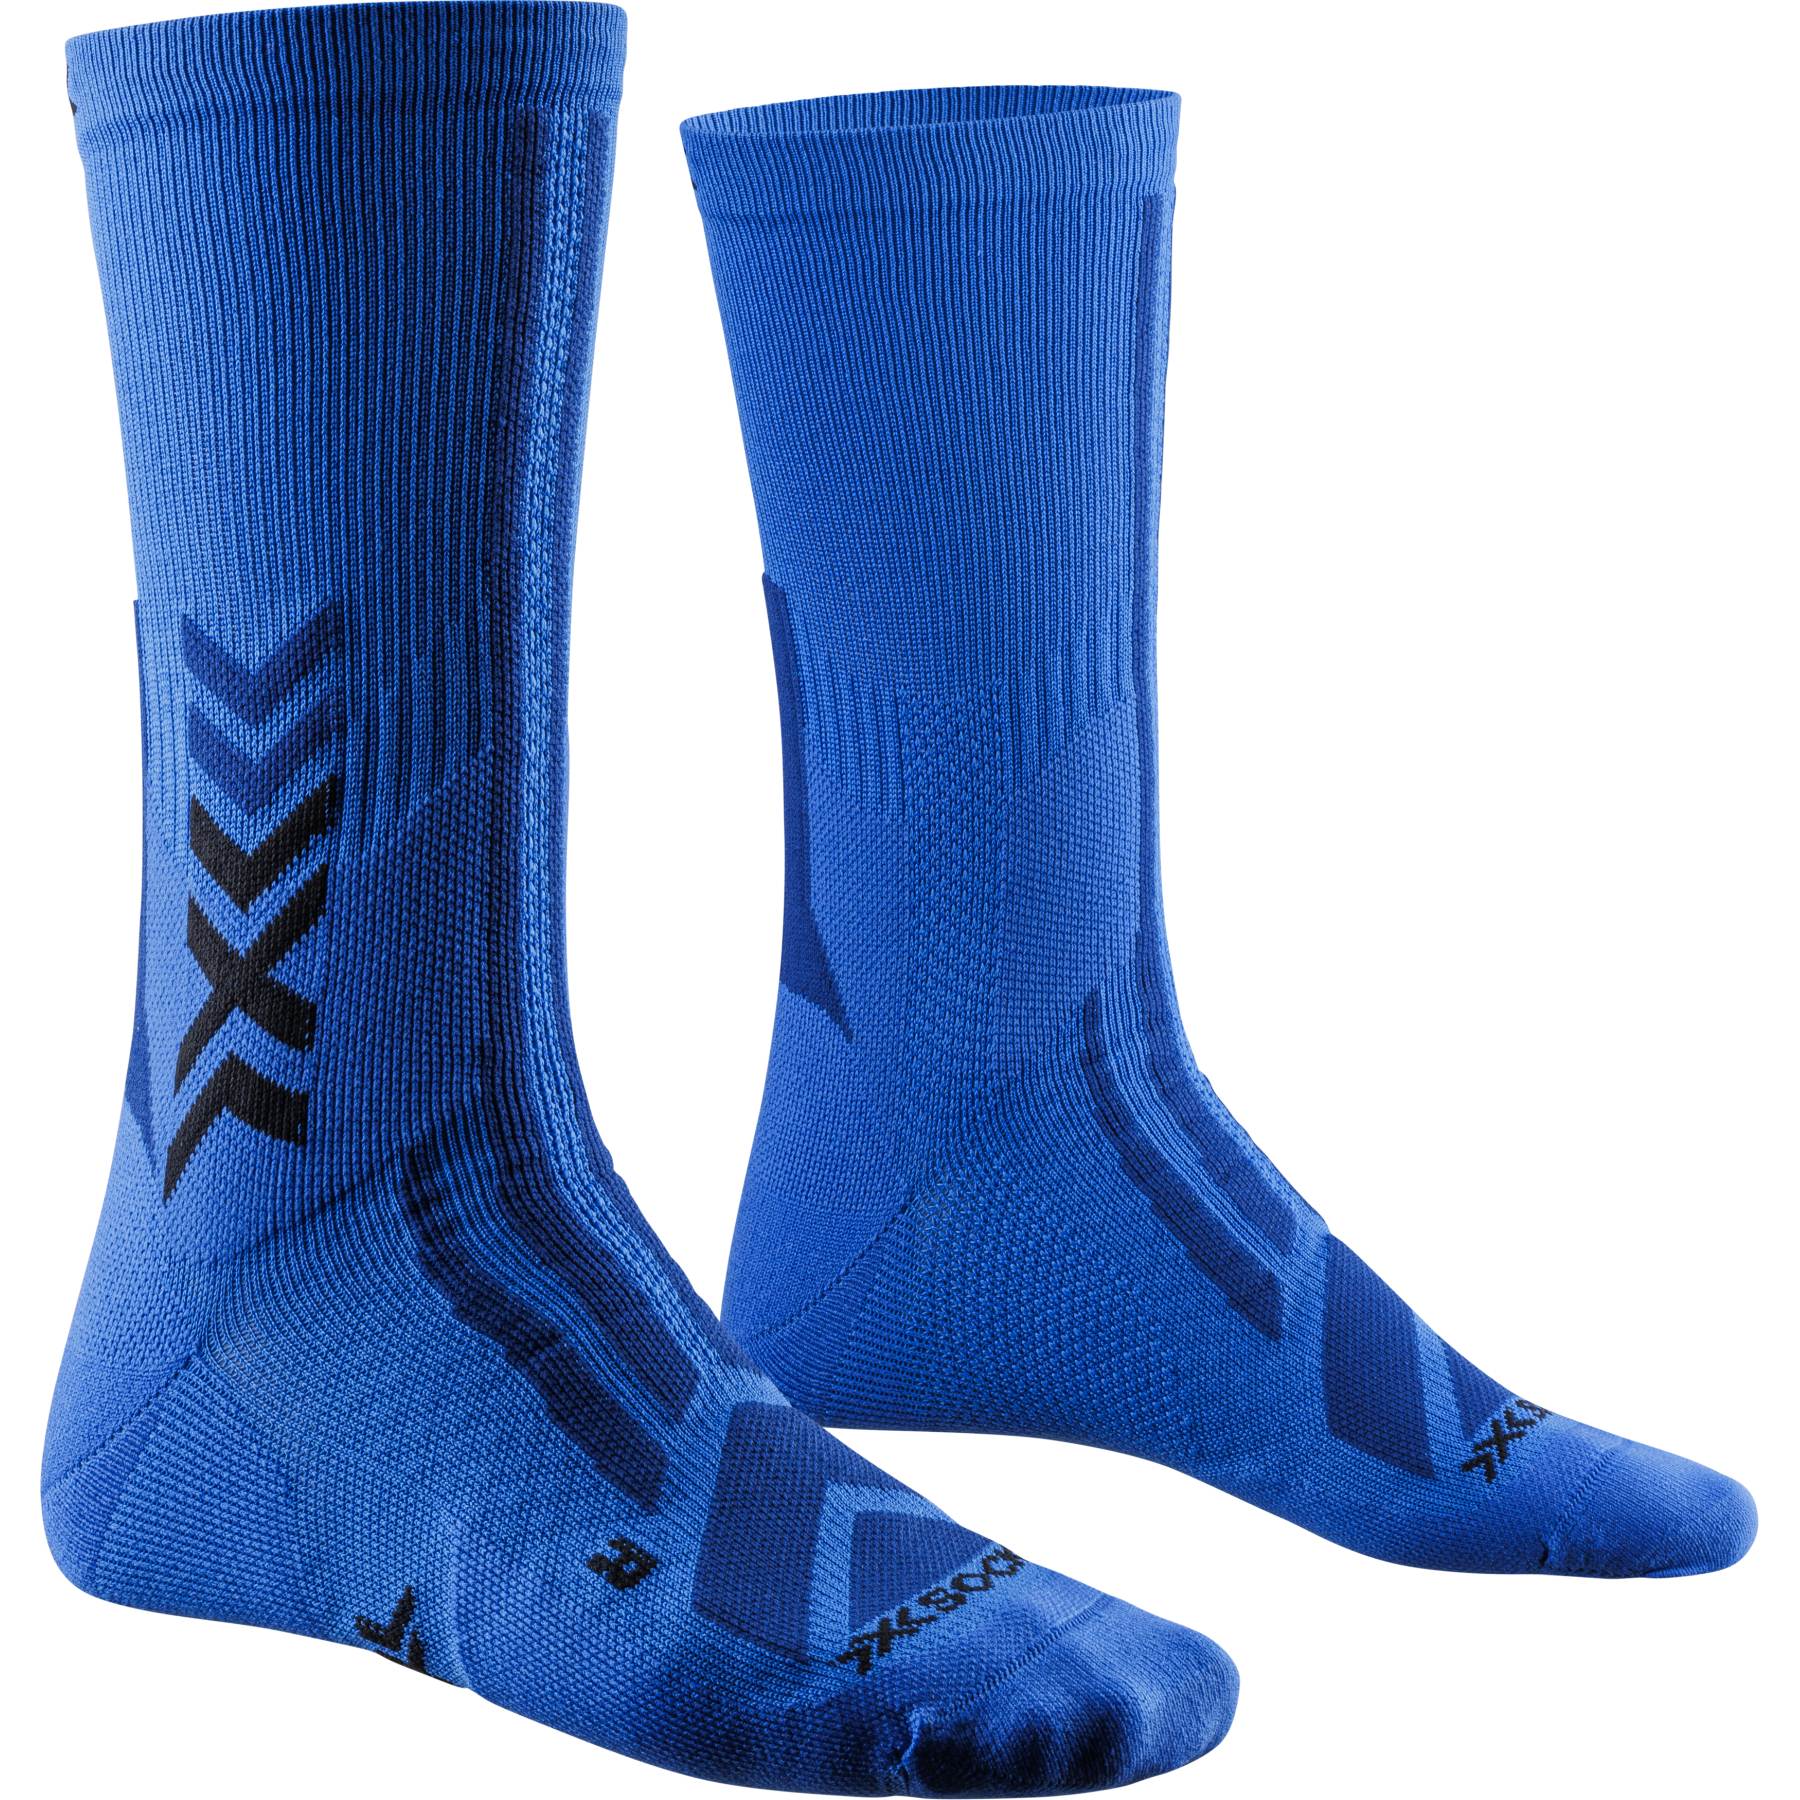 Produktbild von X-Socks Hike Discover Crew Socken - twyce blue/blue